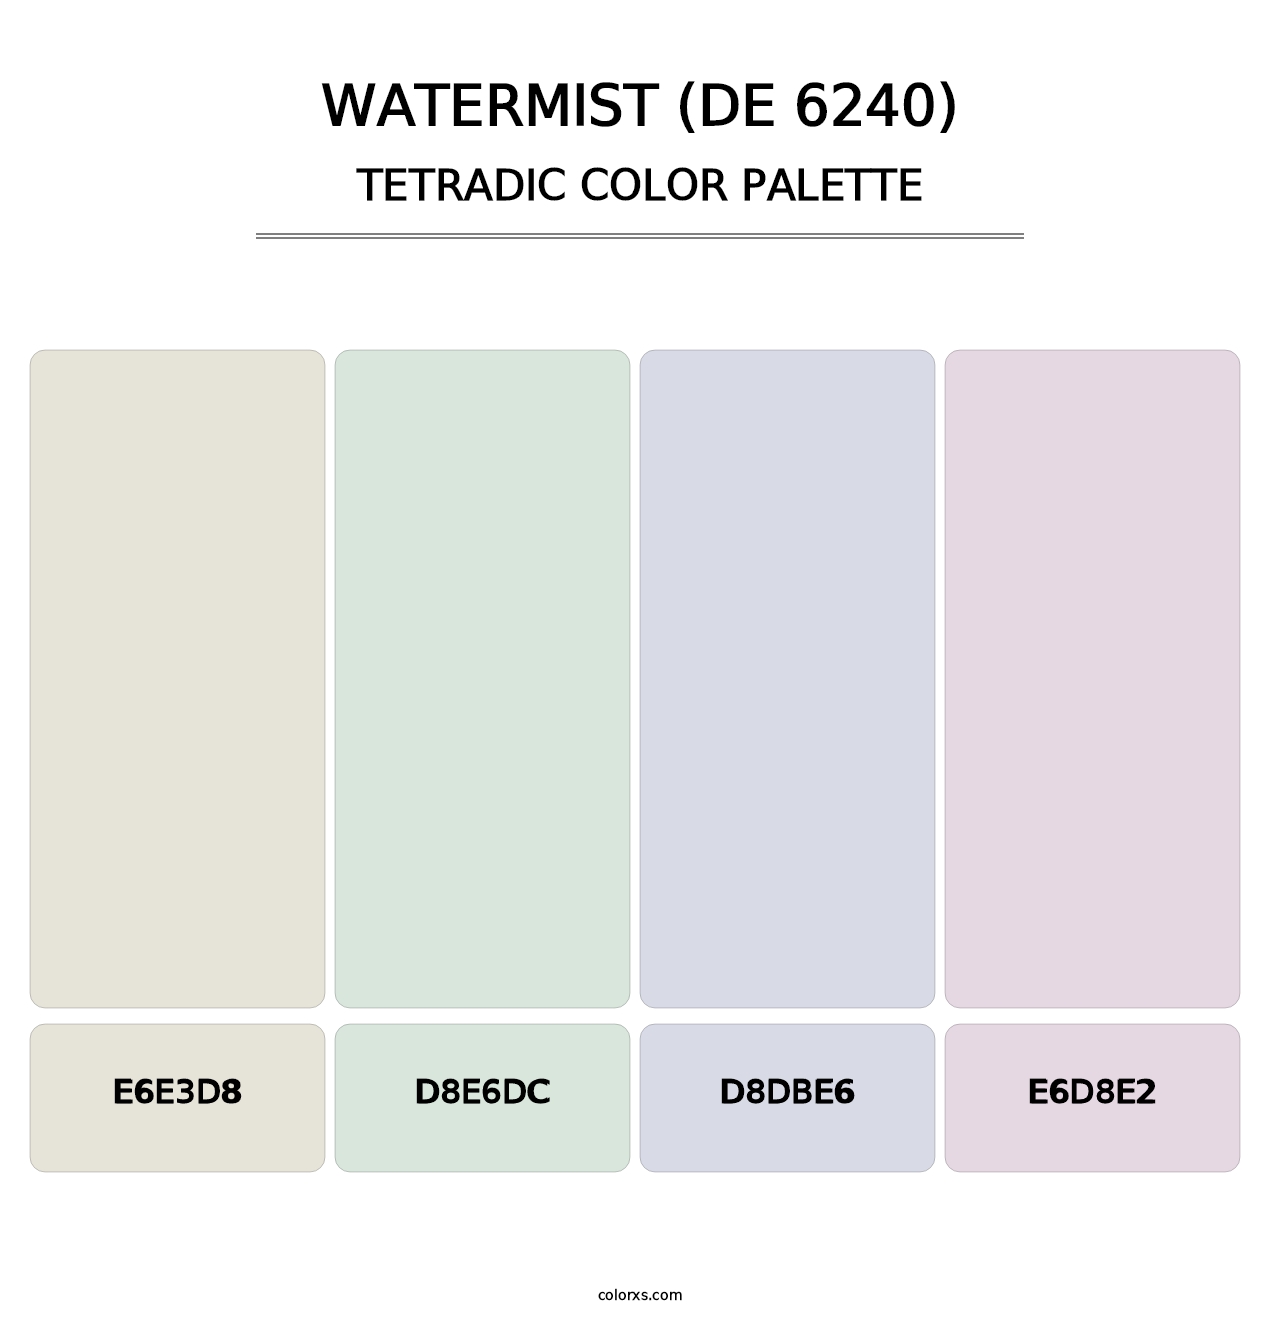 Watermist (DE 6240) - Tetradic Color Palette